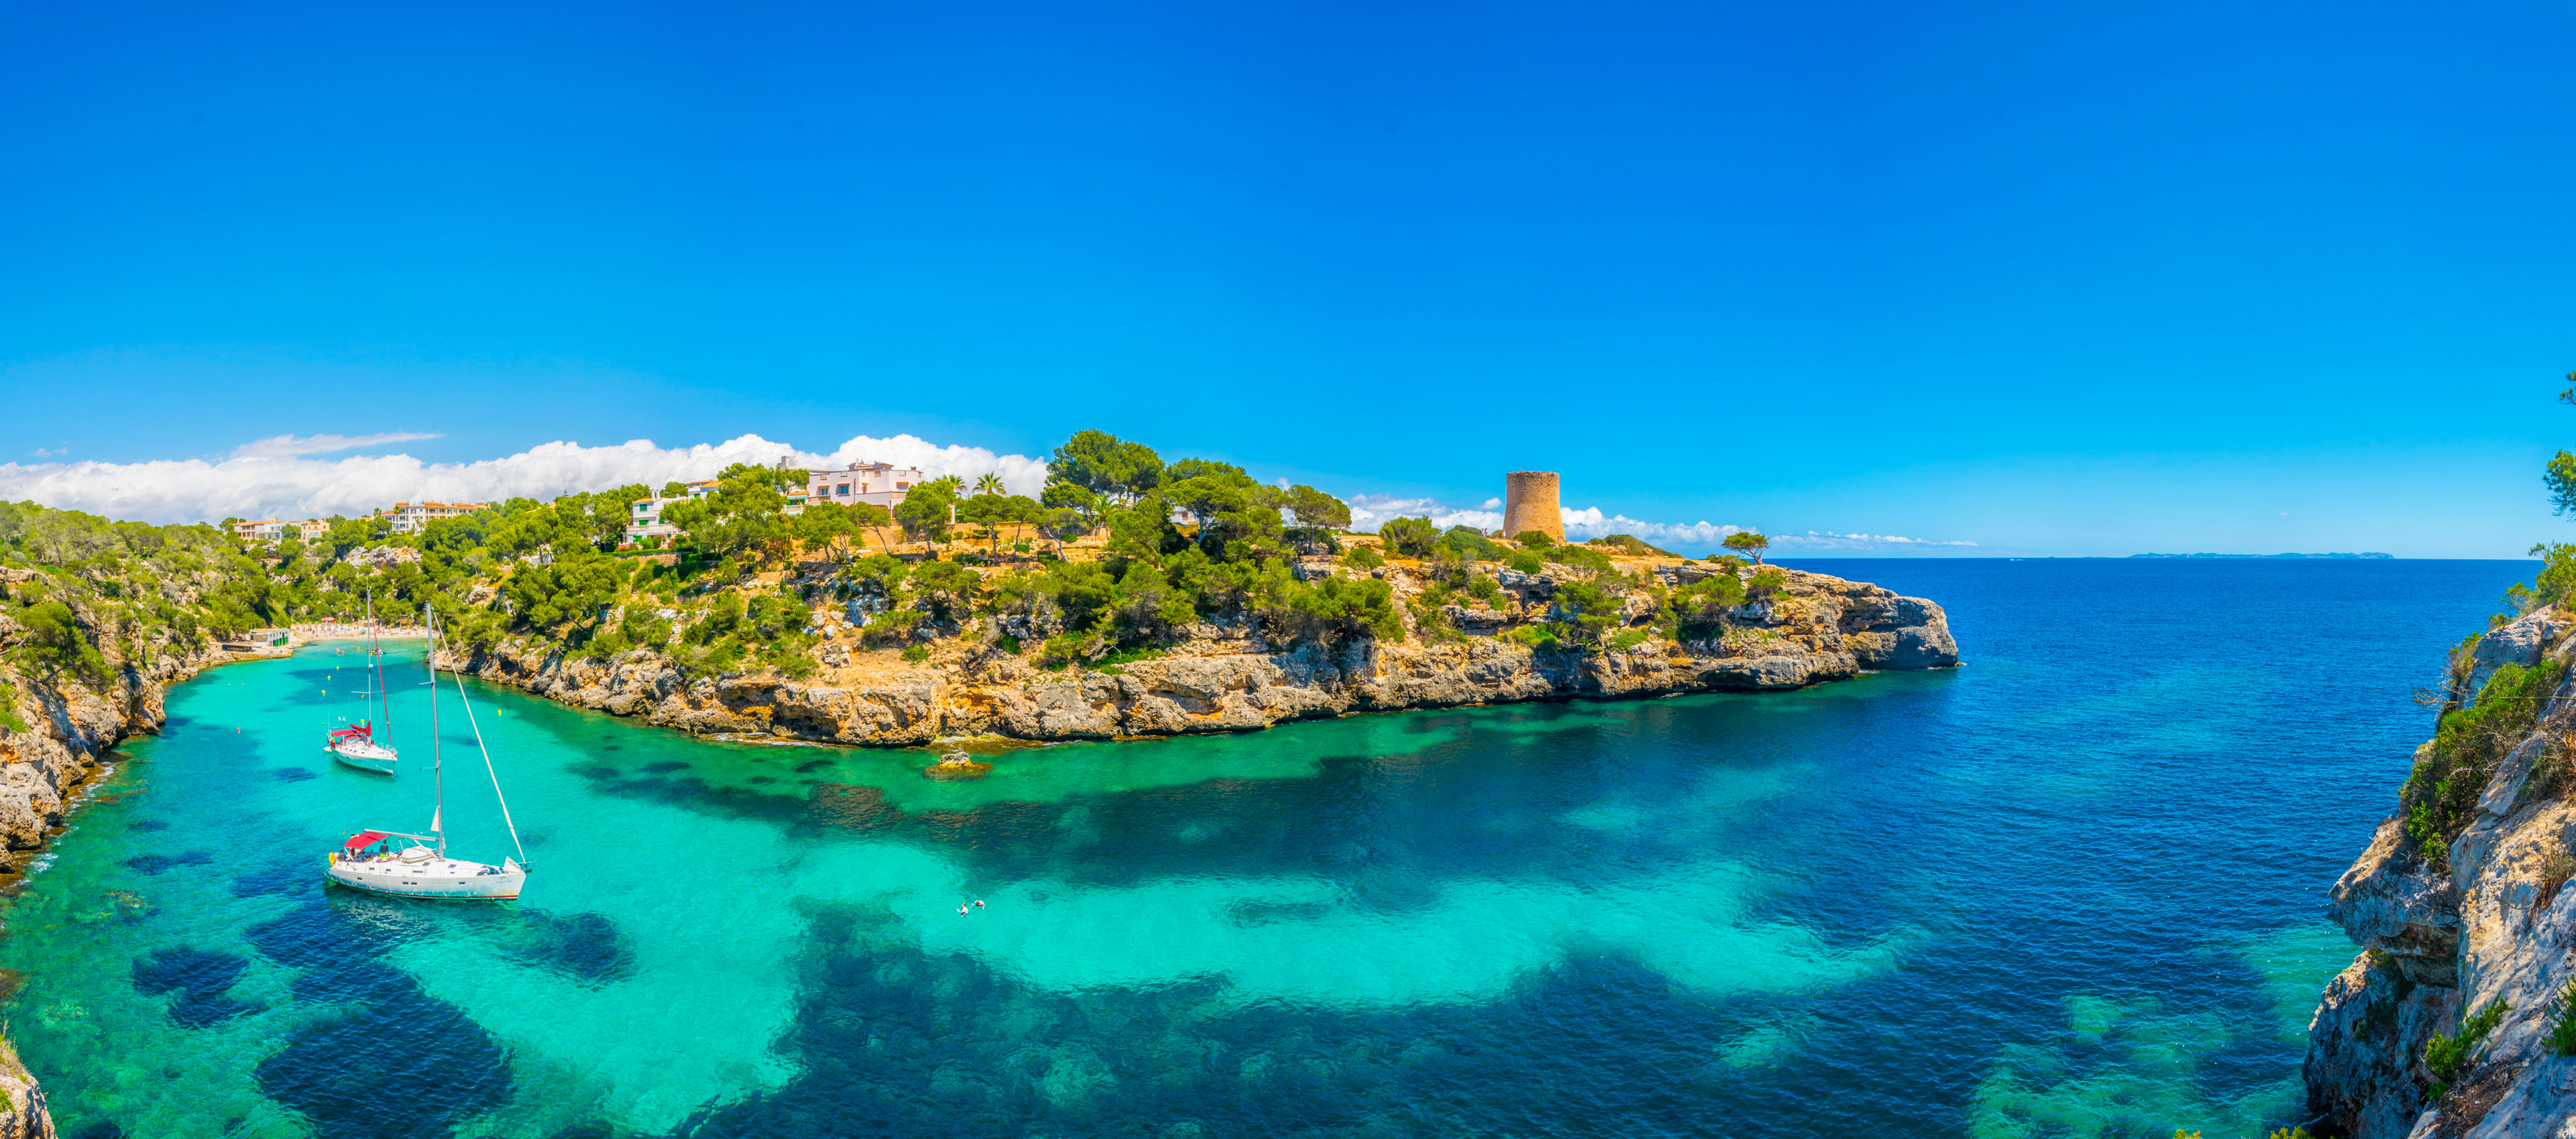 Cala Pi bay at Mallorca, Spain